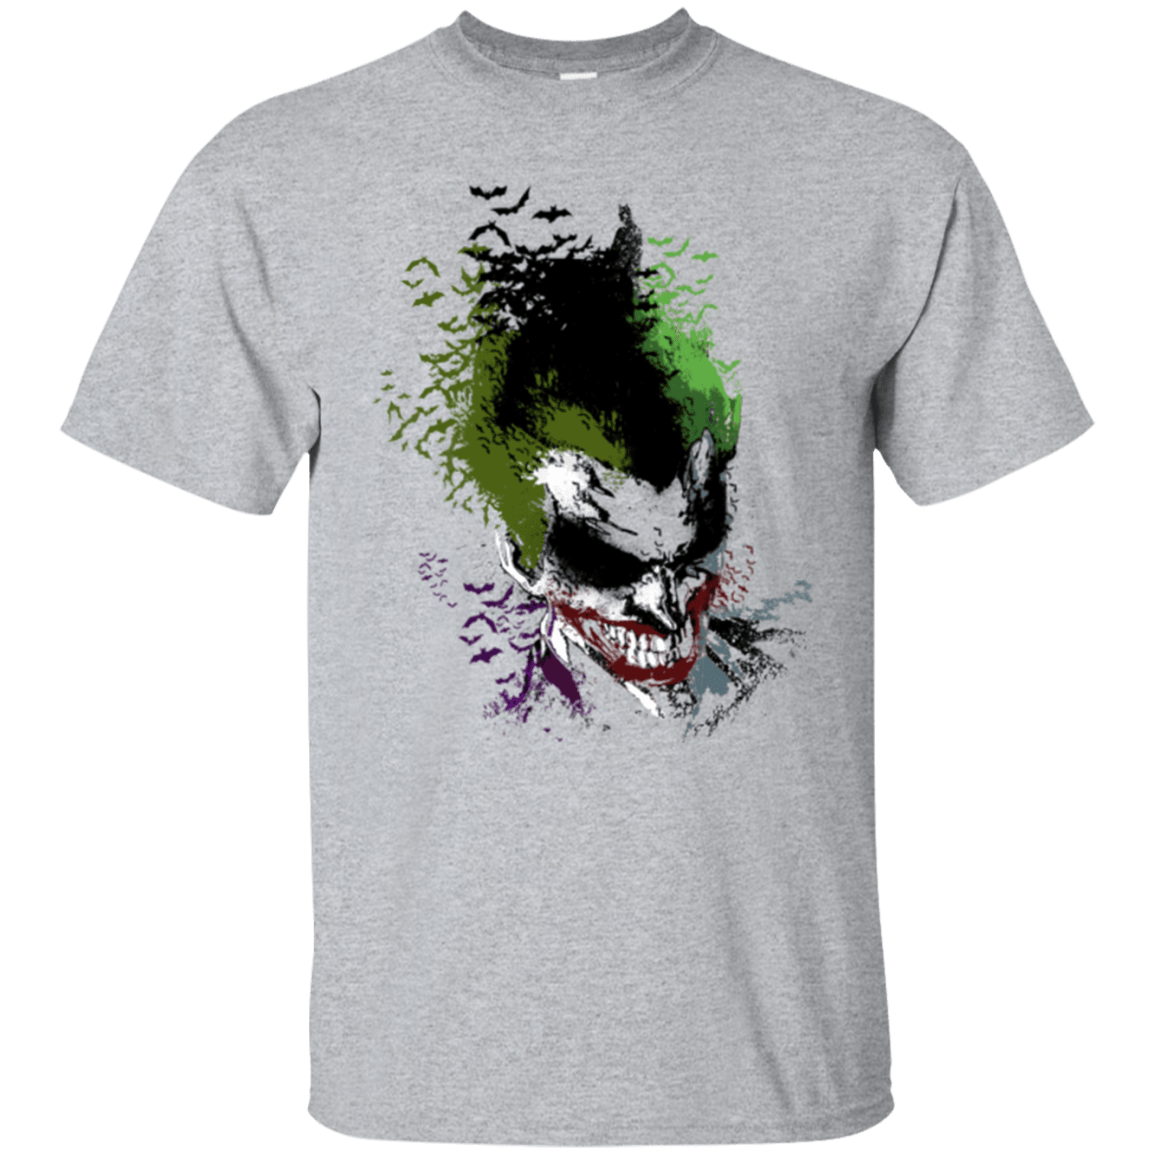 T-Shirts Sport Grey / Small Joker 2 T-Shirt